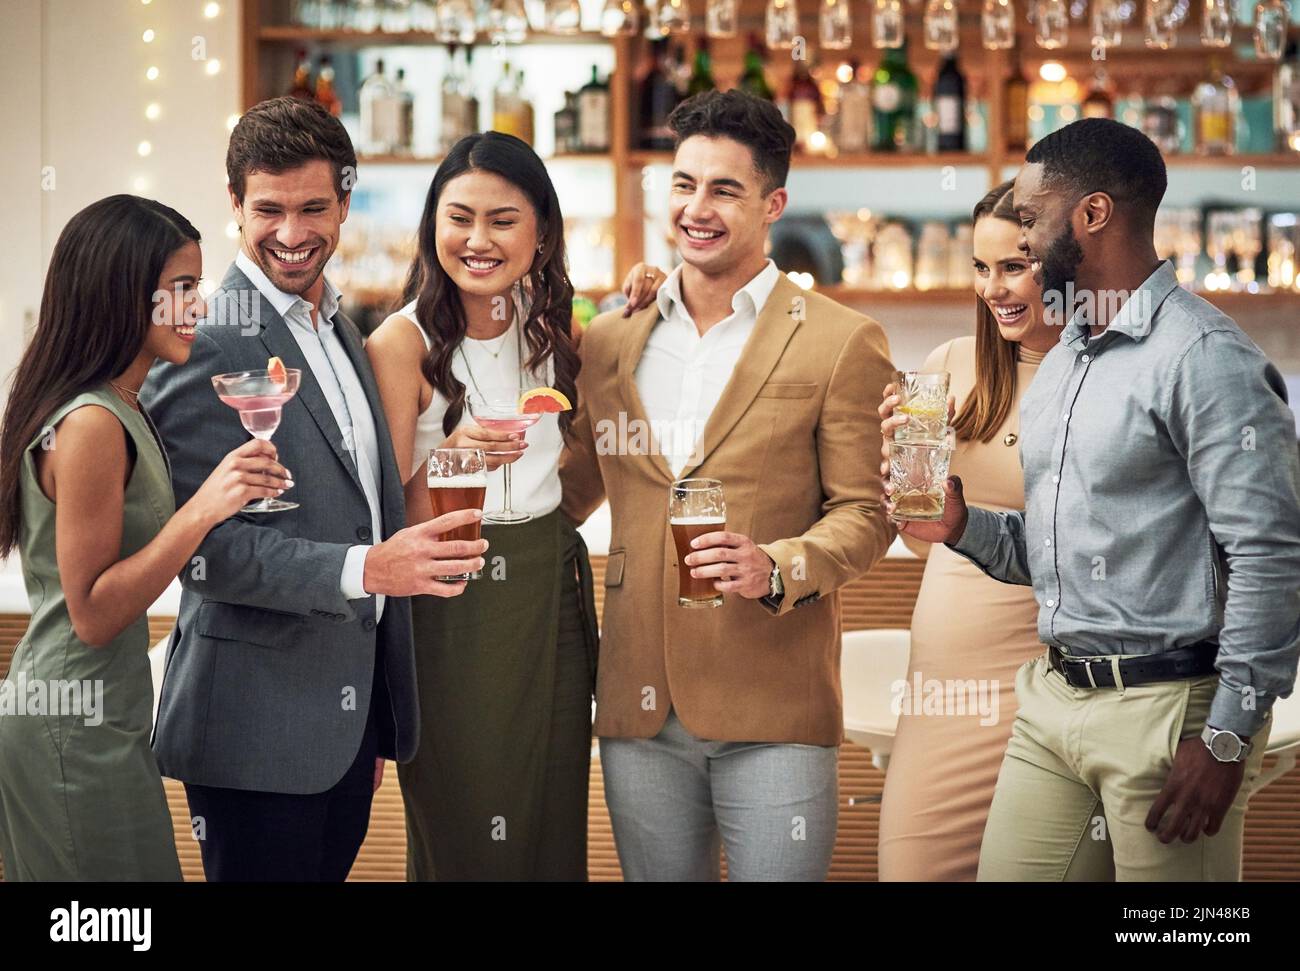 Wir müssen das öfter machen, eine Gruppe junger Freunde, die ihre Getränke halten, während sie in einer Bar stehen. Stockfoto